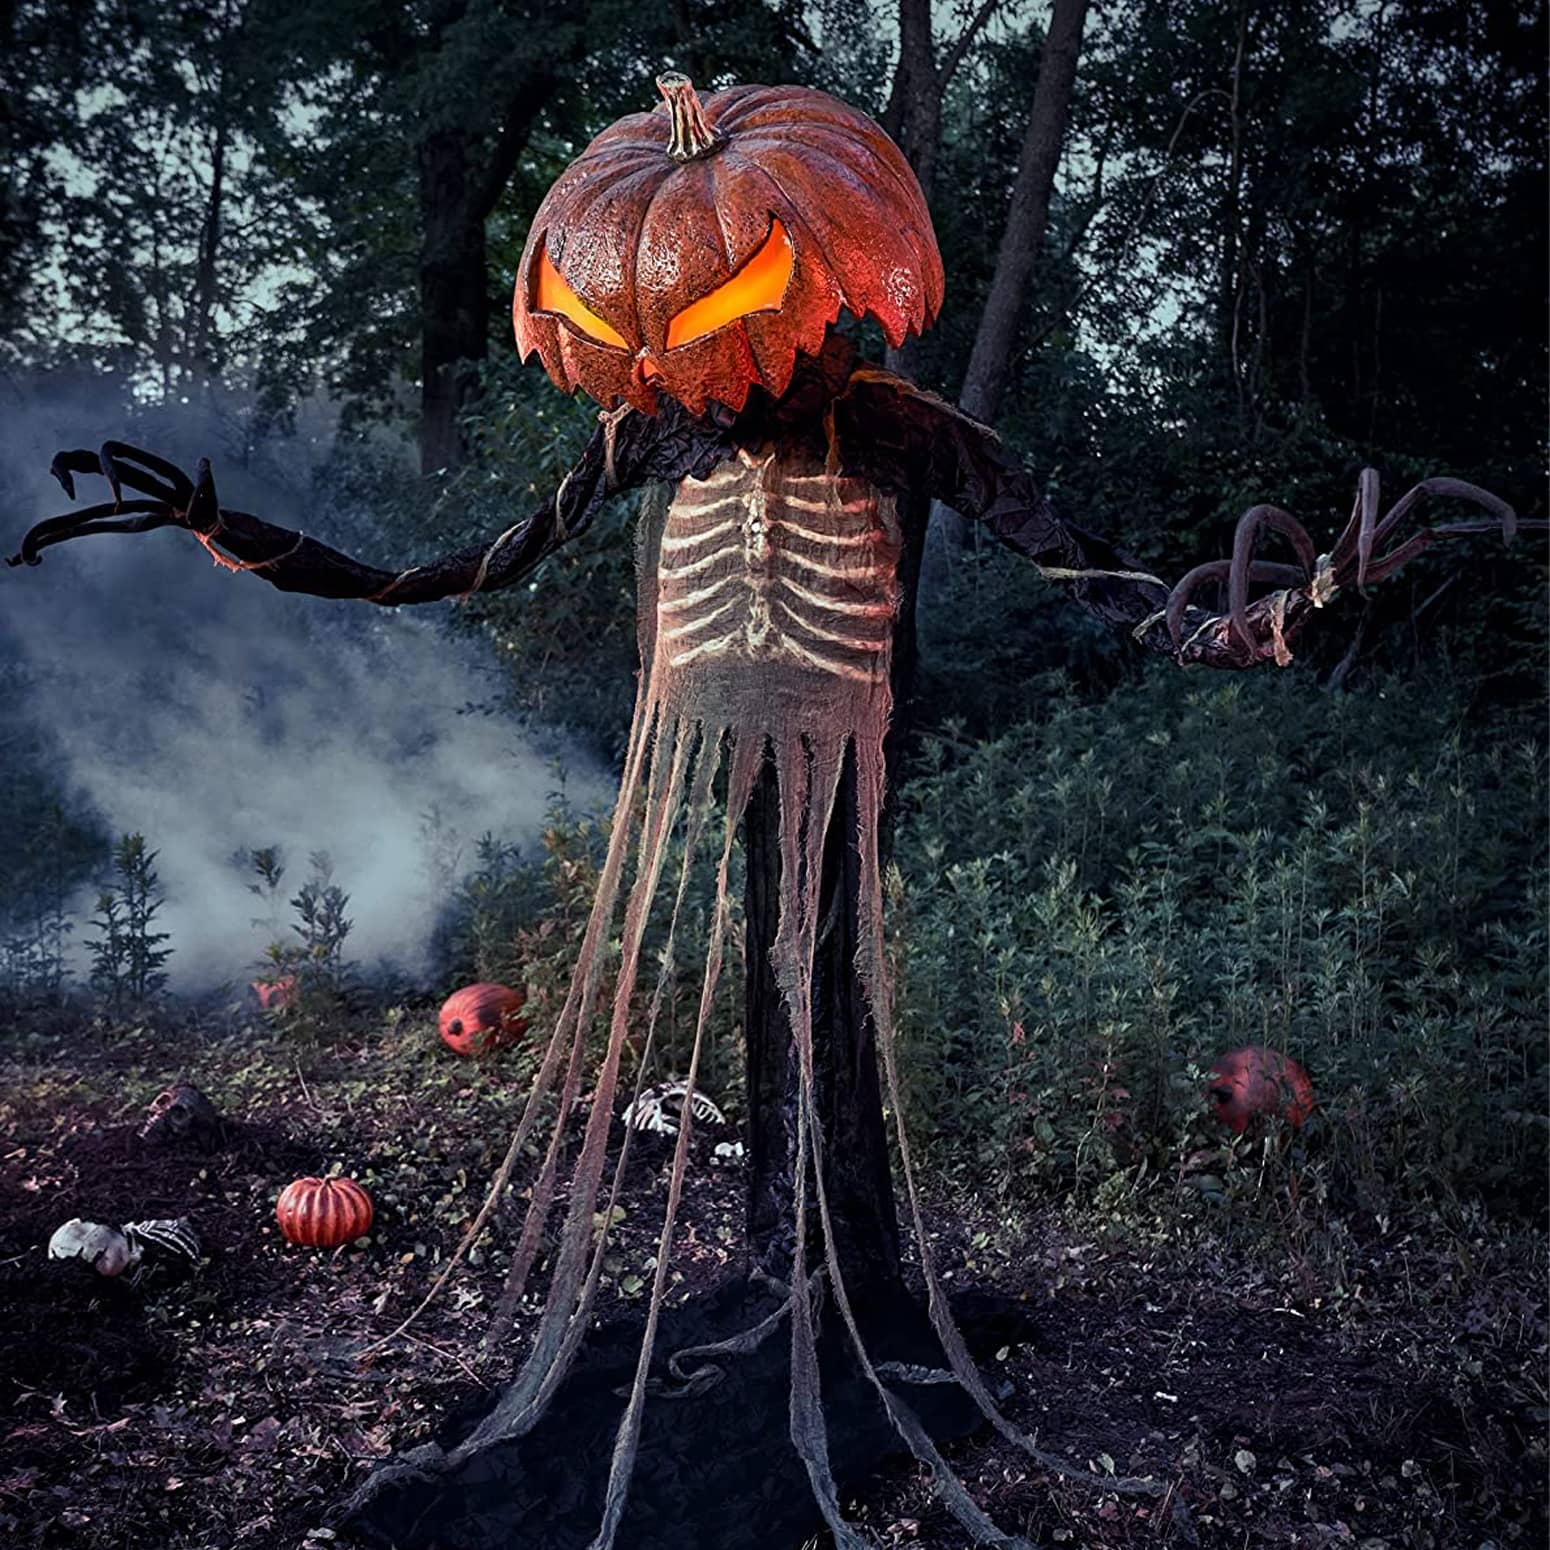 Headless Jack - Gigantic Talking Pumpkin Monster Statue - 9 Feet Tall!